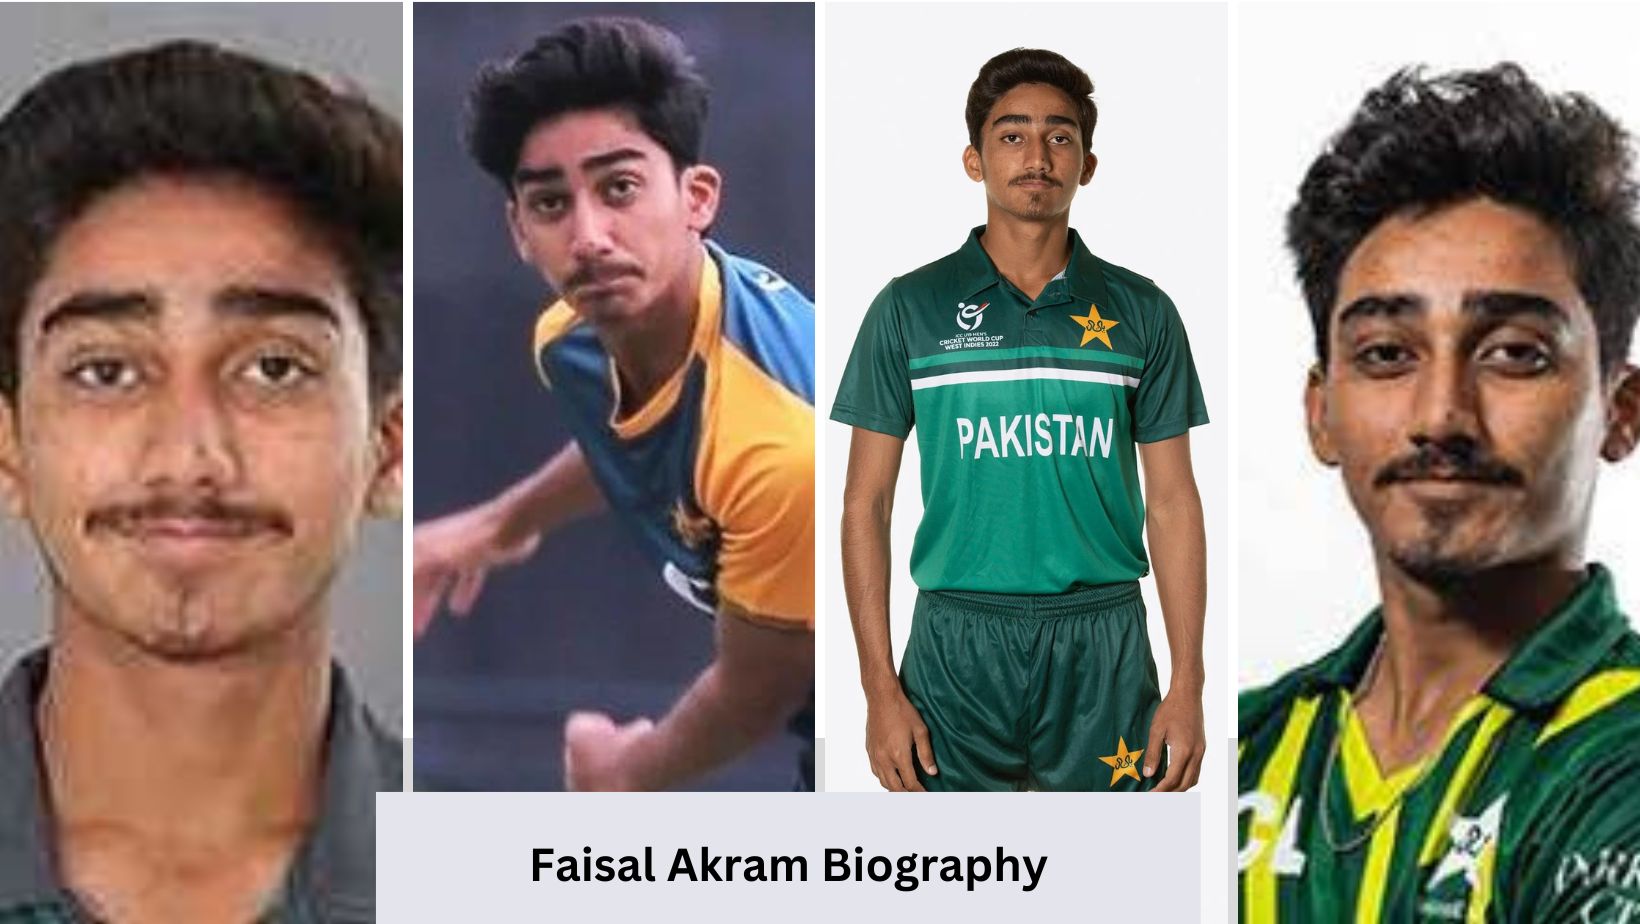 Faisal Akram Biography